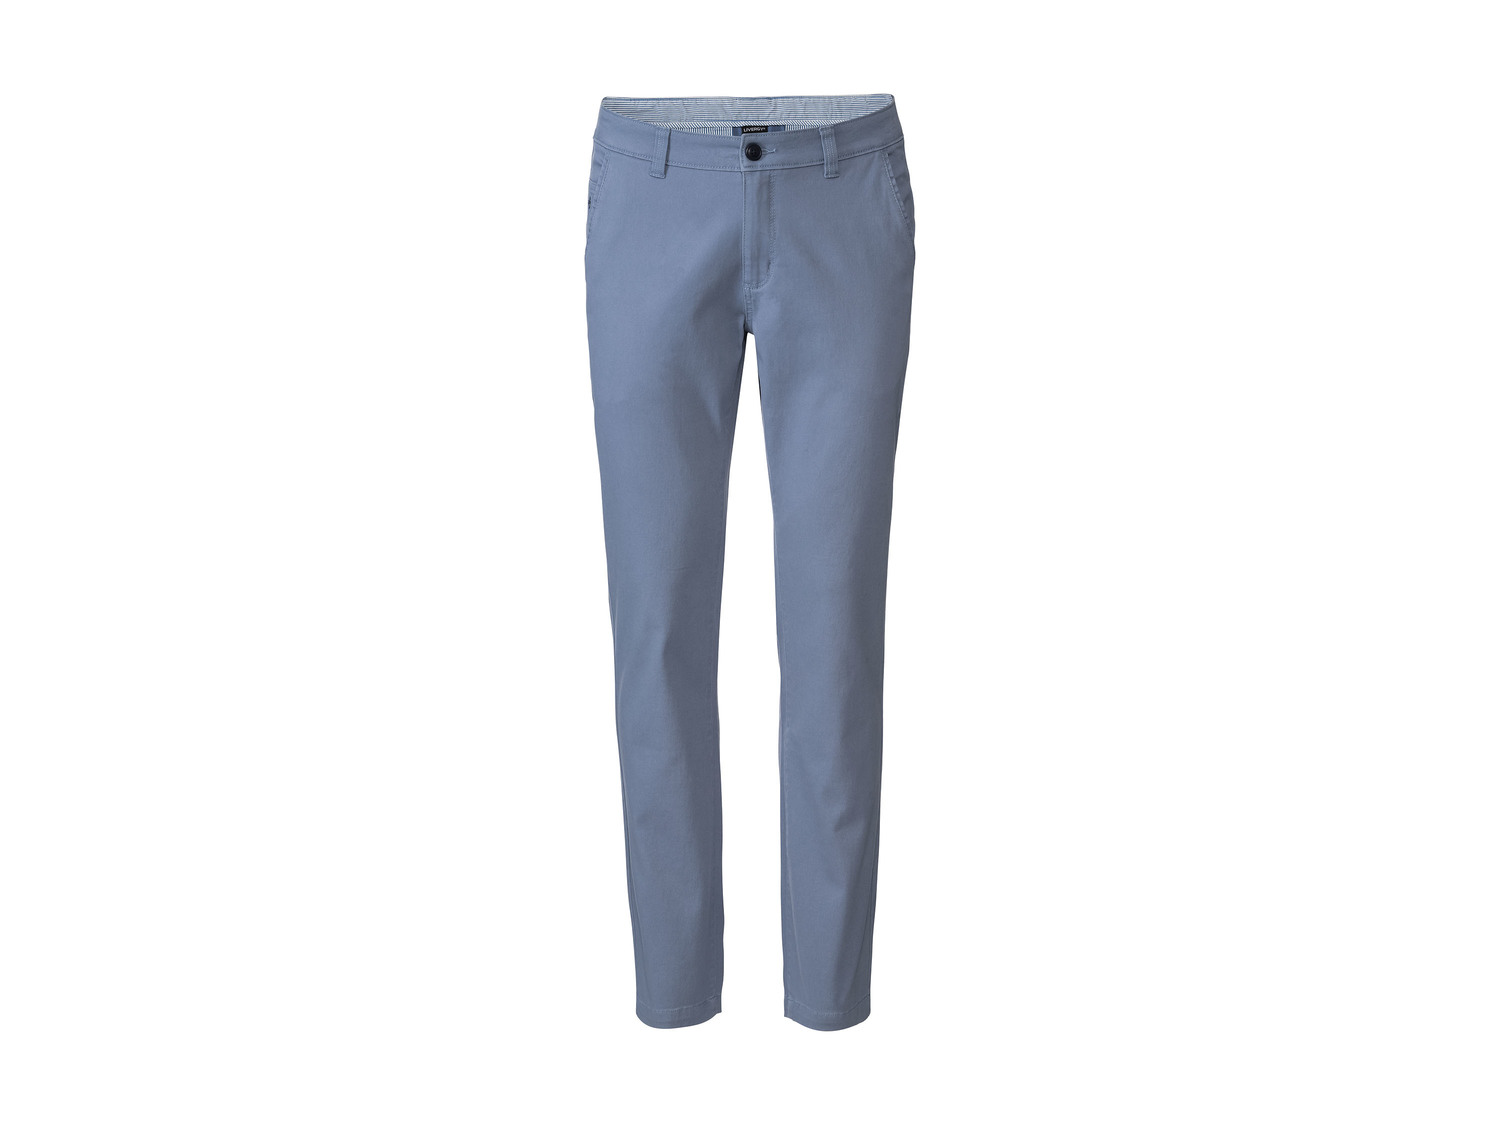 Pantalon chino homme , le prix 9.99 € 
- Ex. 98 % coton et 2 % élasthanne (LYCRA®)
- ...